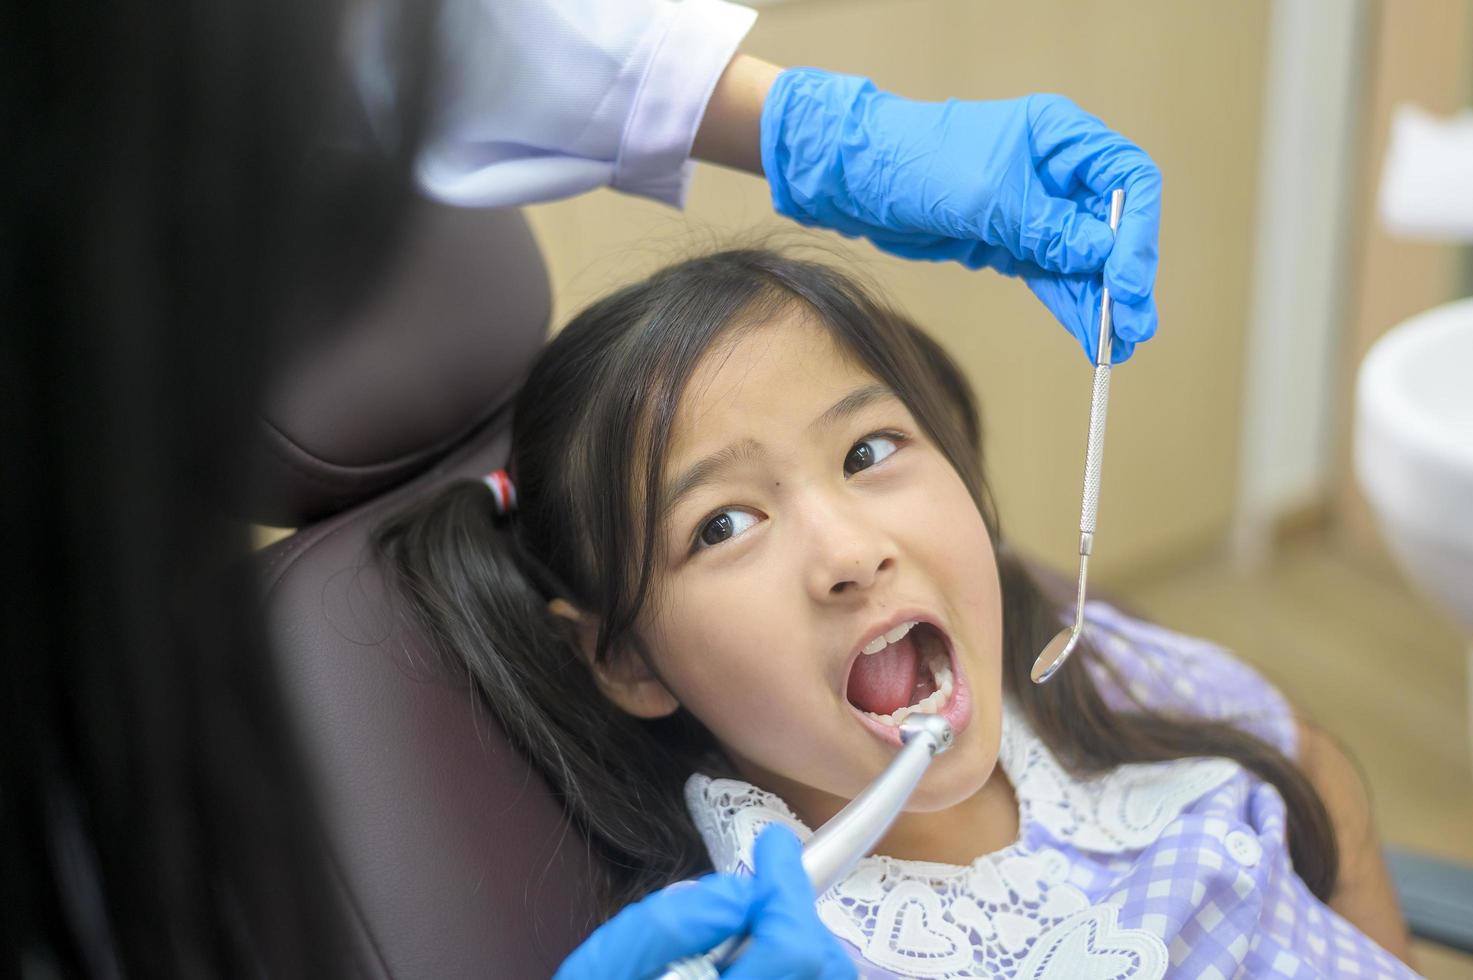 une petite fille mignonne ayant des dents examinées par un dentiste dans une clinique dentaire, un contrôle des dents et un concept de dents saines photo